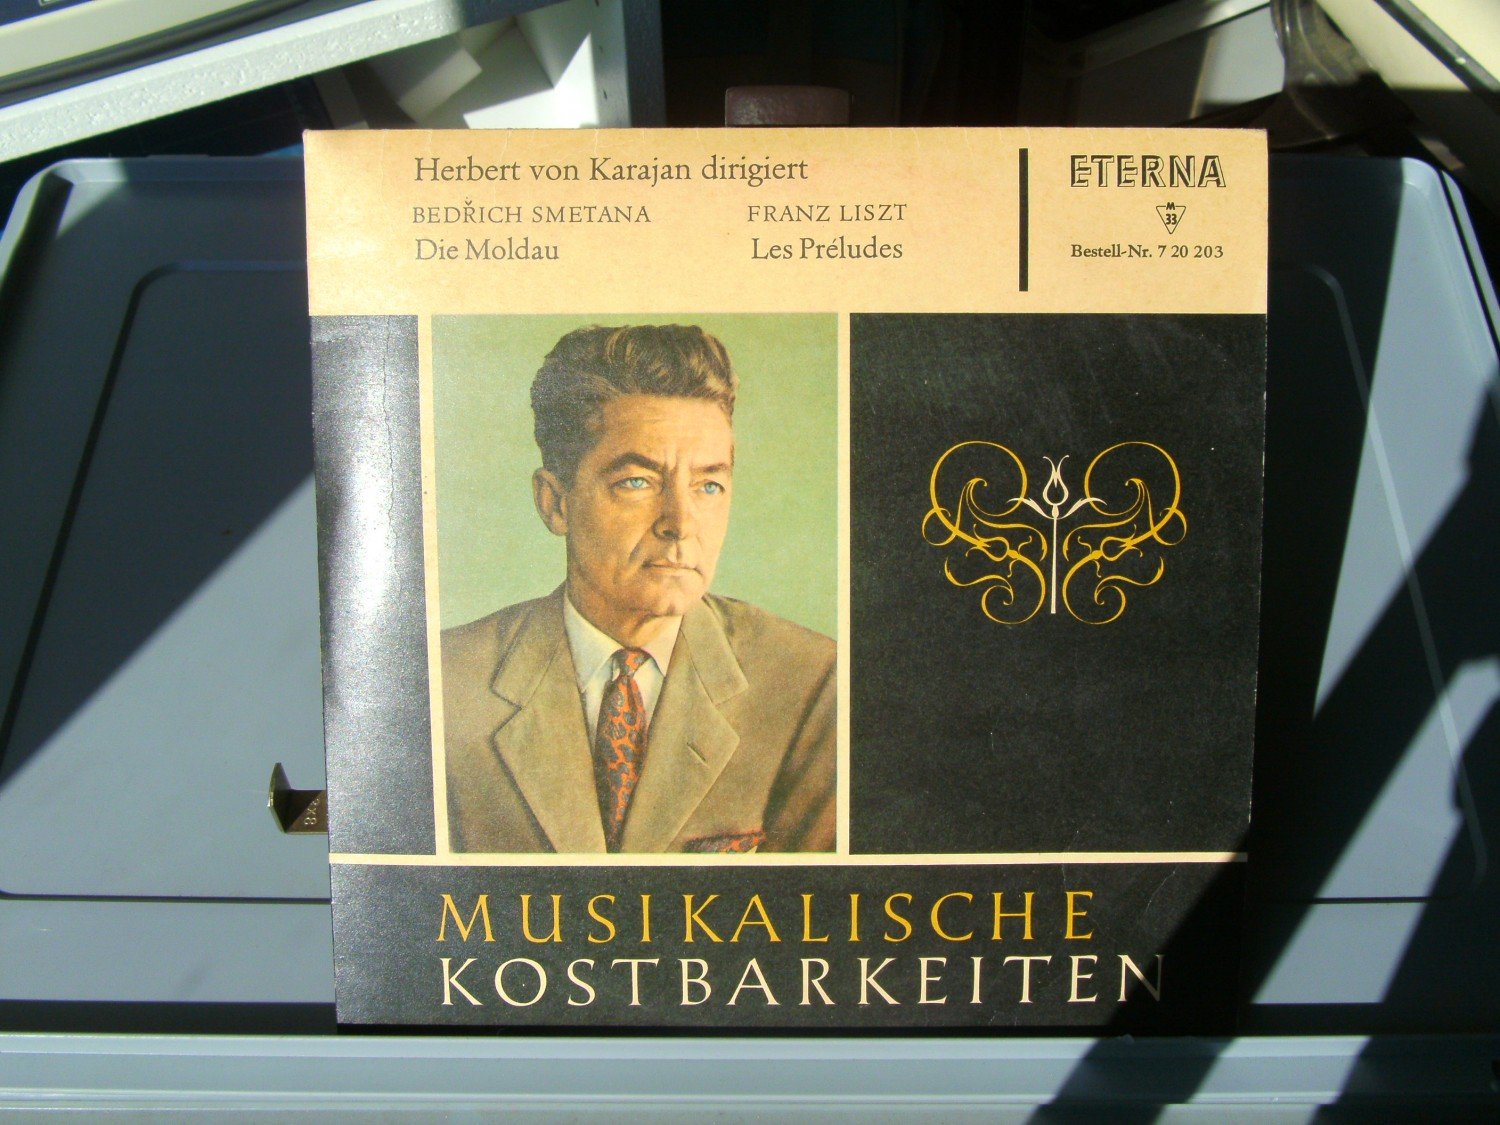 KOSTBARKEITEN“ kaufen Karajan) Tonträger gebraucht – von – MUSIKALISCHE (Herbert A02fmSCJ21ZZ7